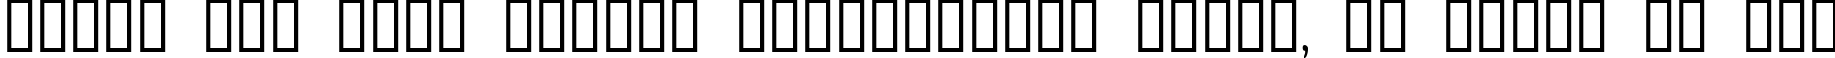 Пример написания шрифтом Antelope H текста на русском